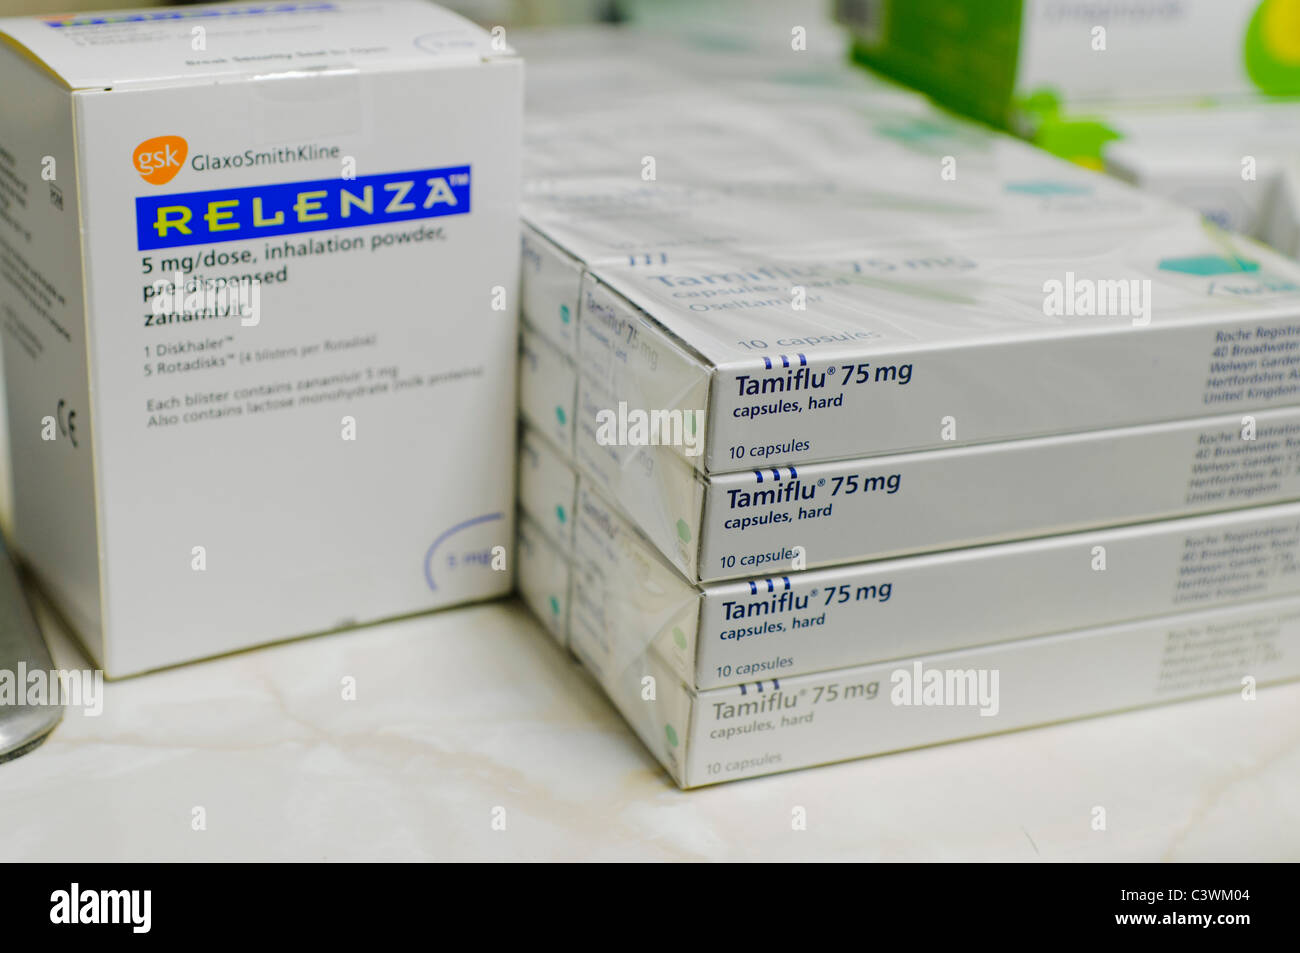 Unica casella di (Relenza Zanamivir) Rotadisks/Diskhaler, 5mg accanto a scatole di Tamiflu 75 mg capsule su un pharmicist's bench Foto Stock